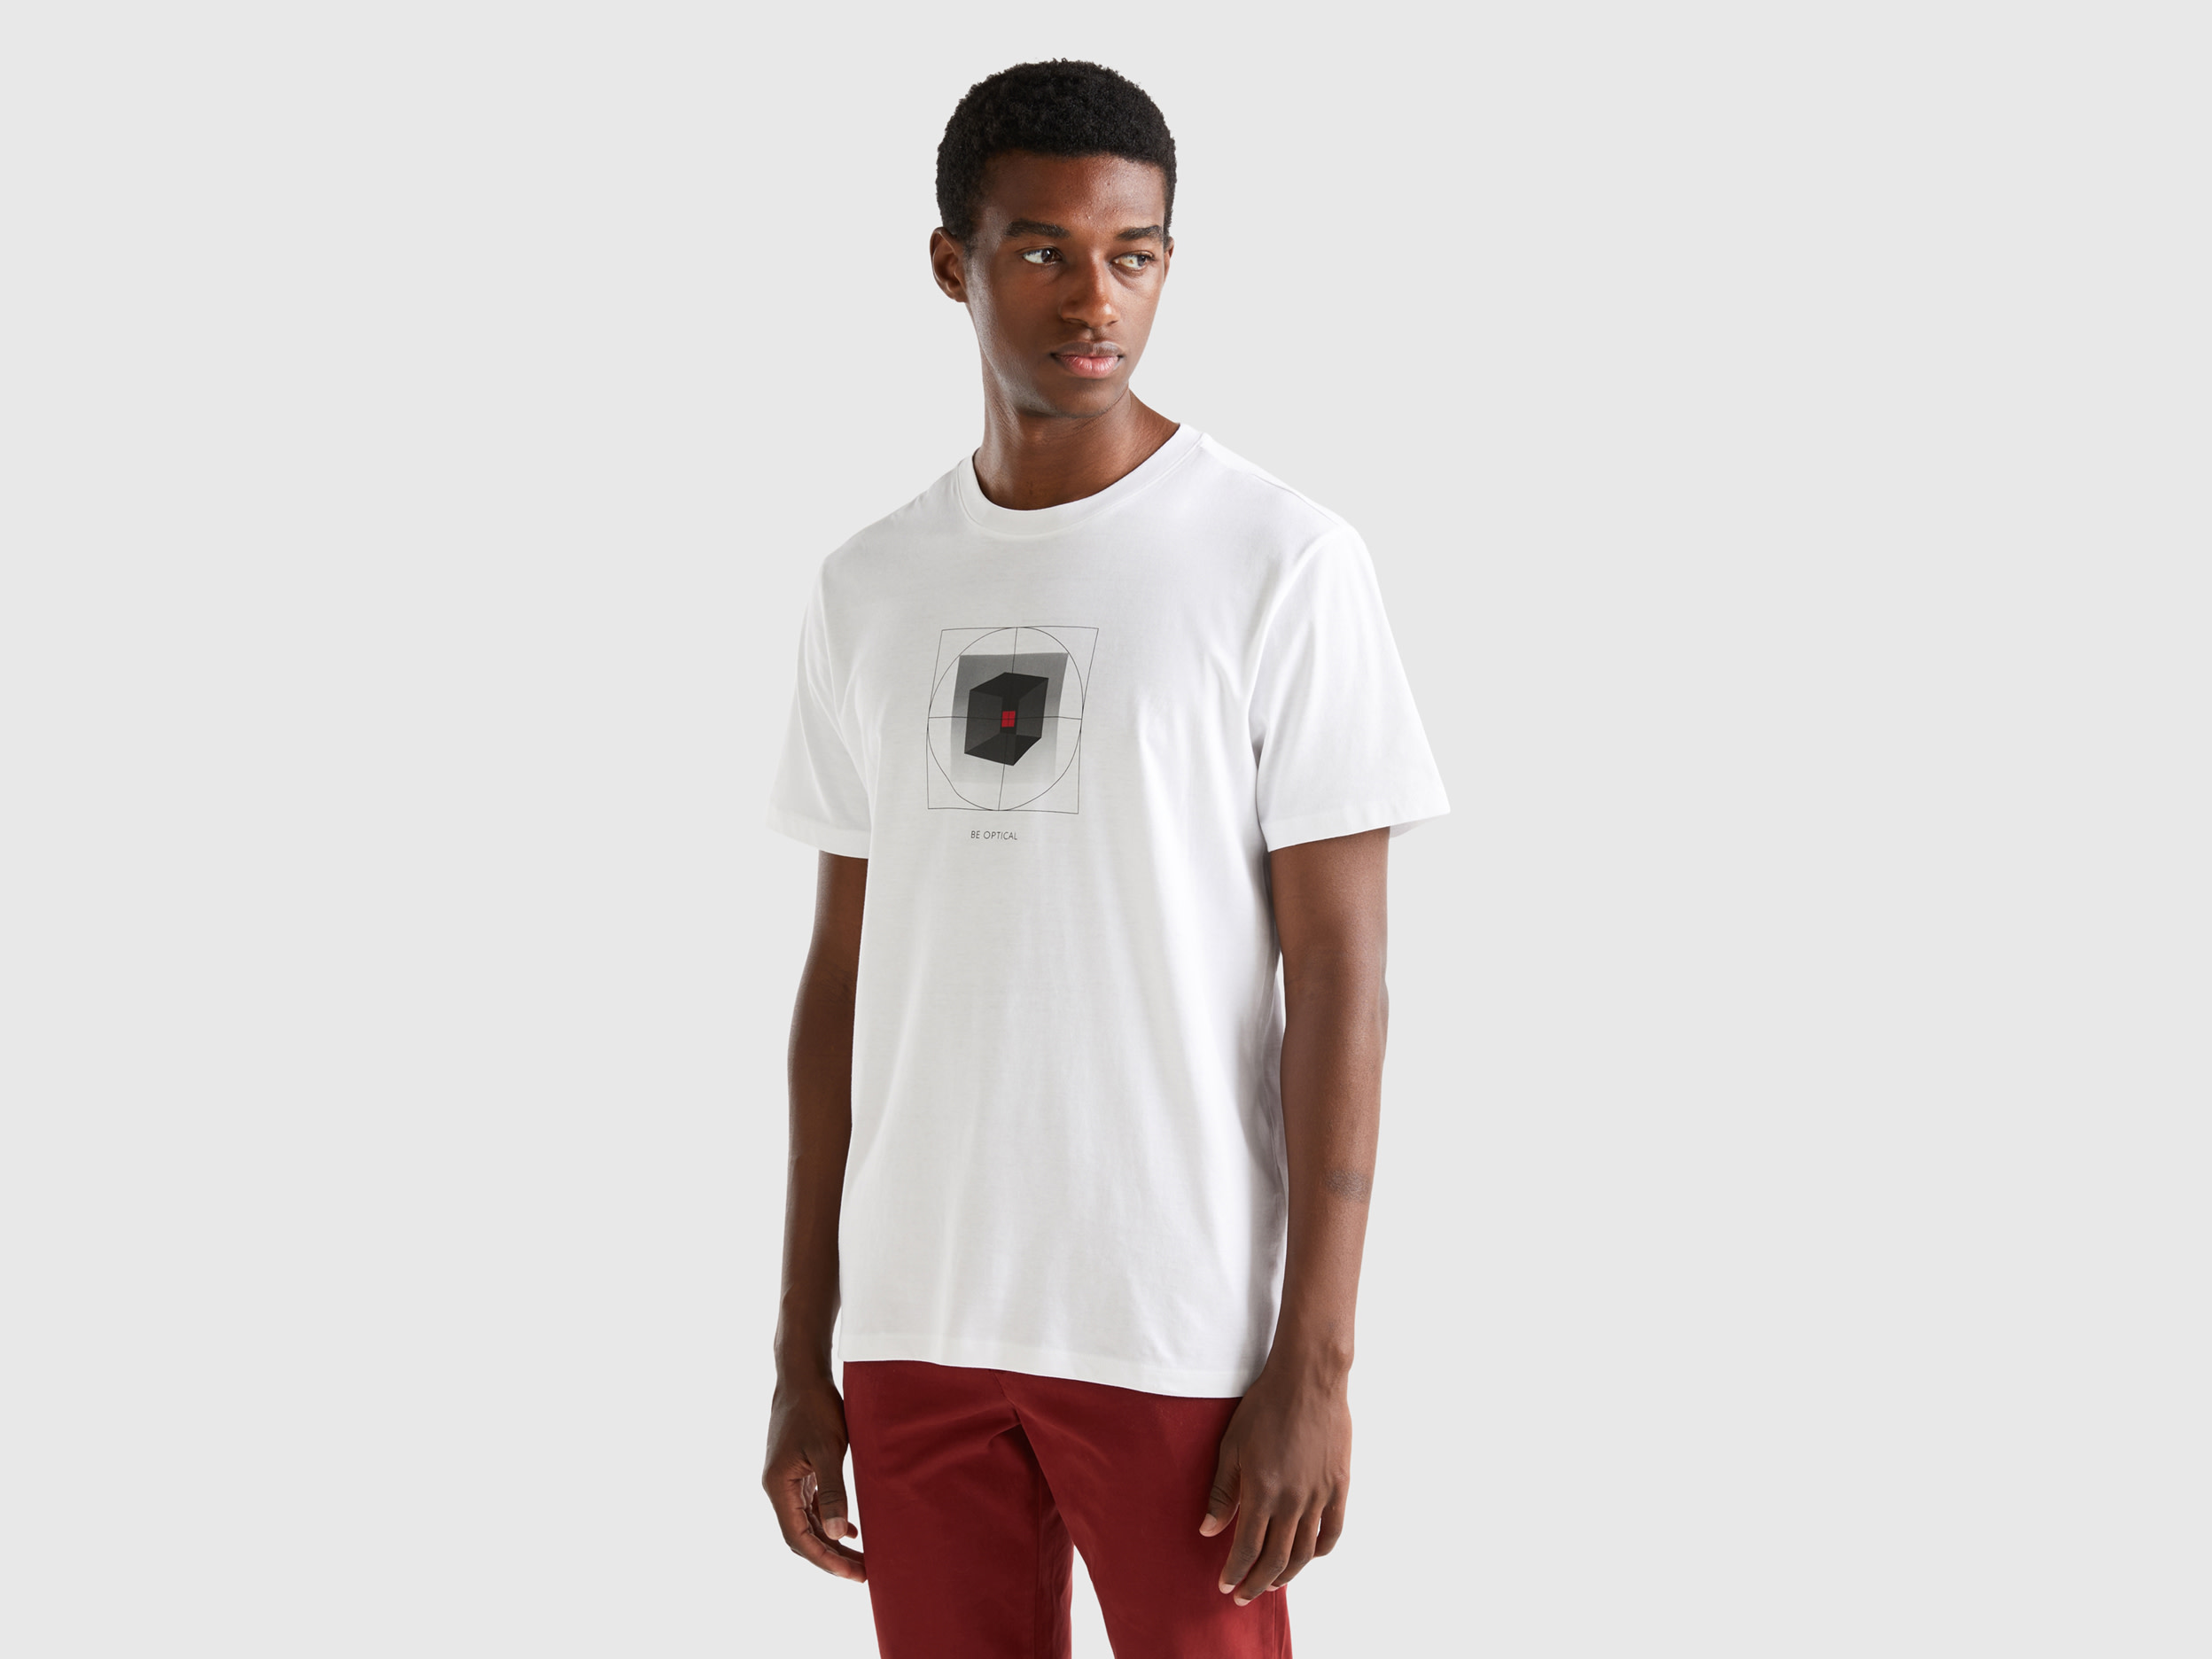 Benetton, 100% Cotton T-shirt With Print, size XXXL, White, Men